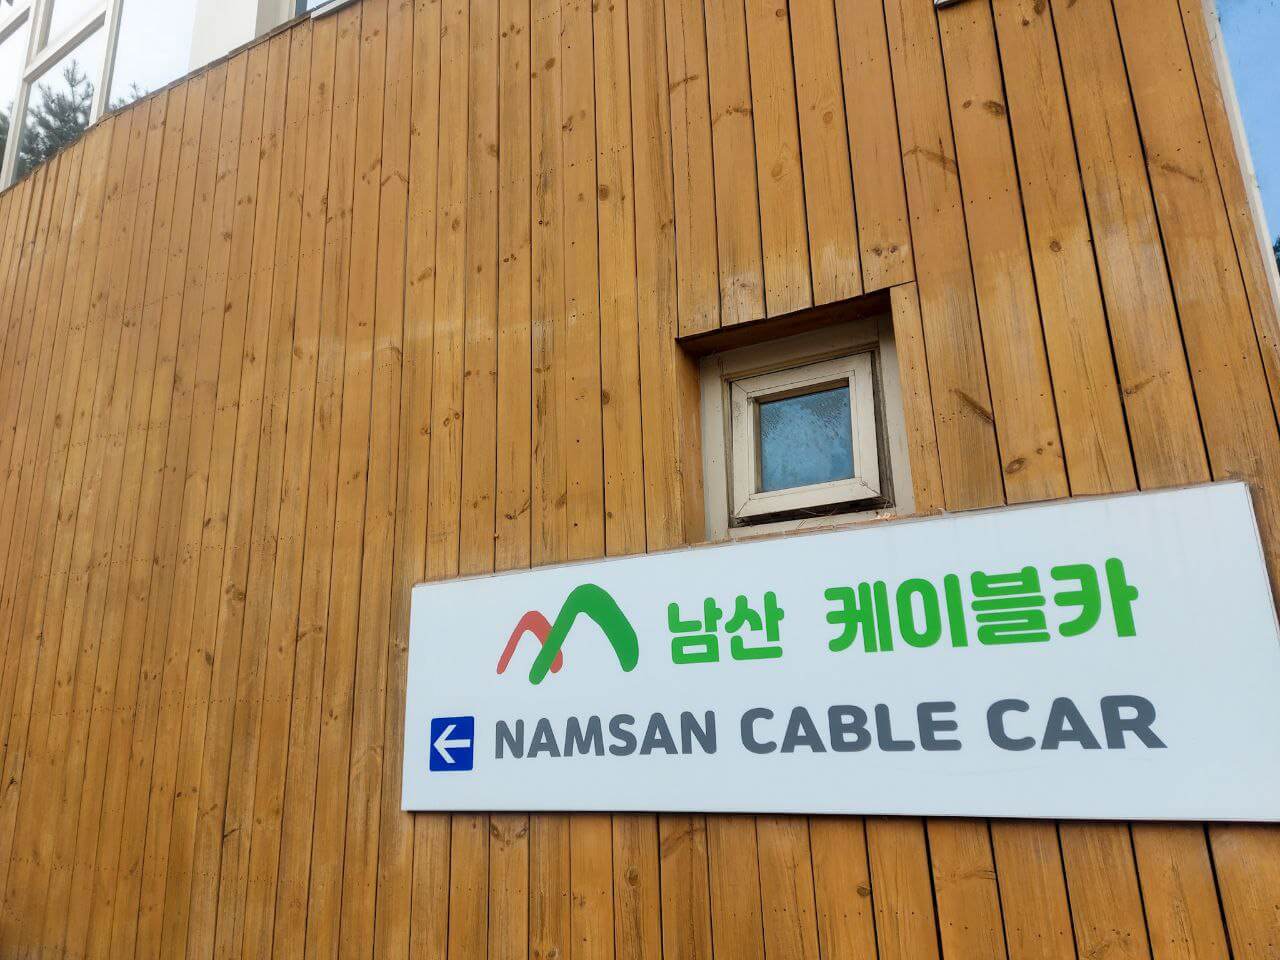 Namsan Cable Car entrance